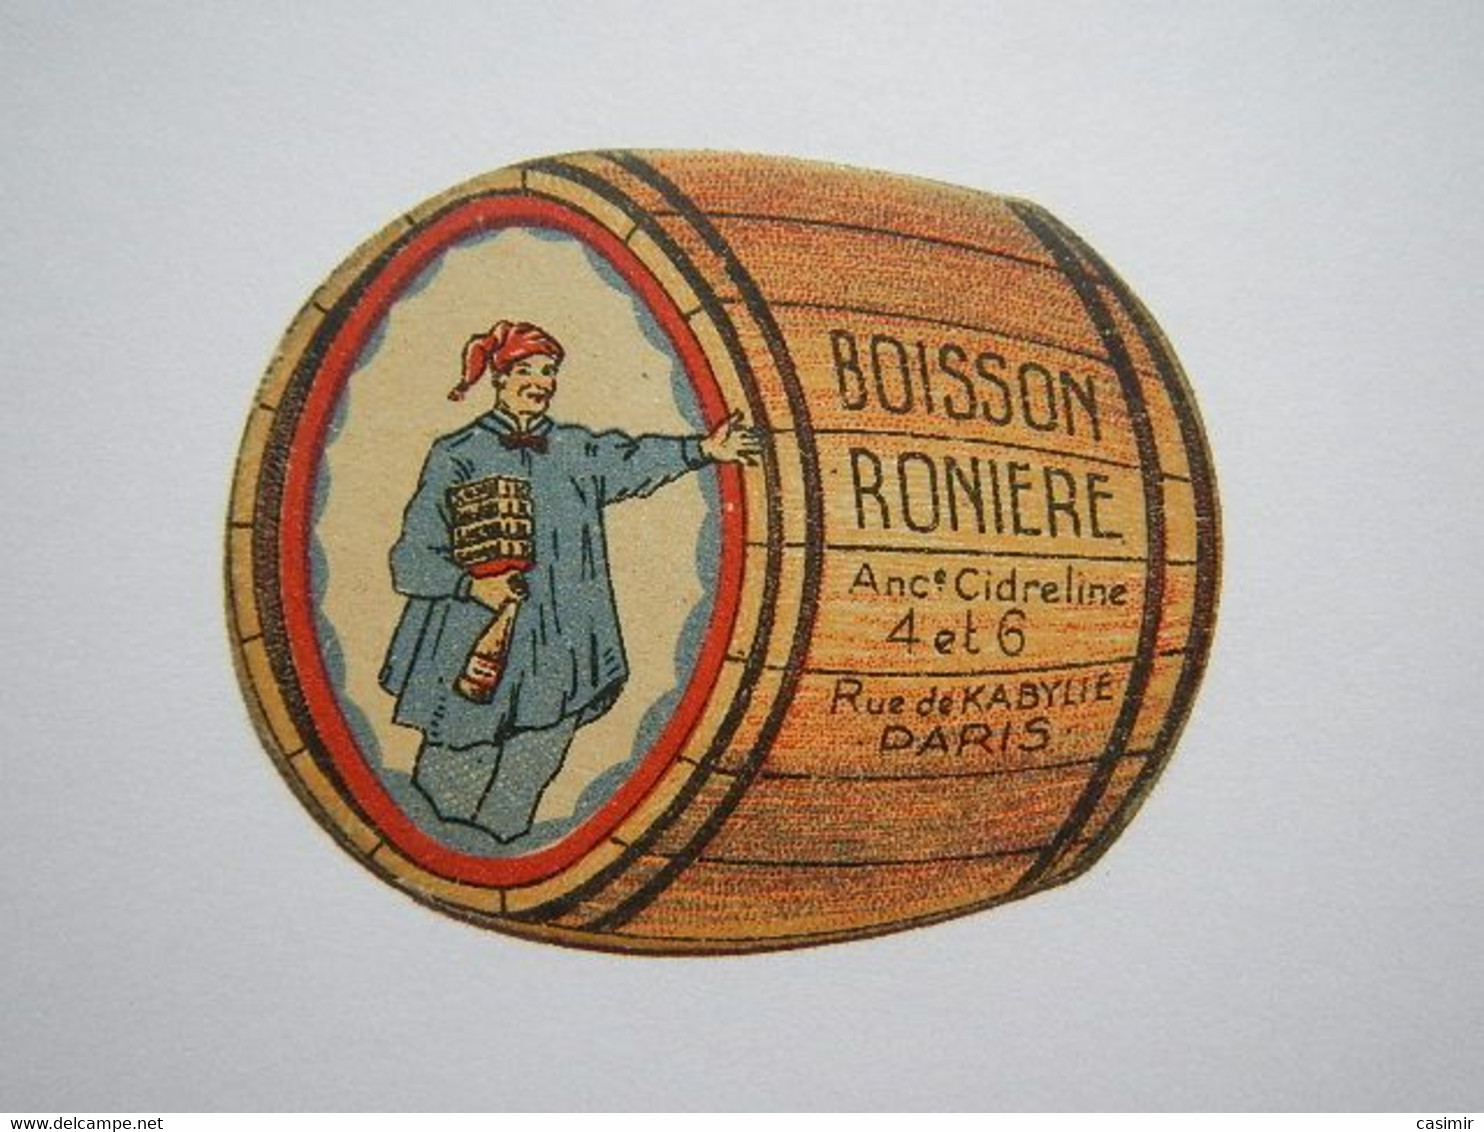 B0005a - Chromo BOISSON RONIERE - Tonneau - Ancienne Cidreline - Cidre - 4 Et 6 Rue De Kabylie PARIS - Alcohol